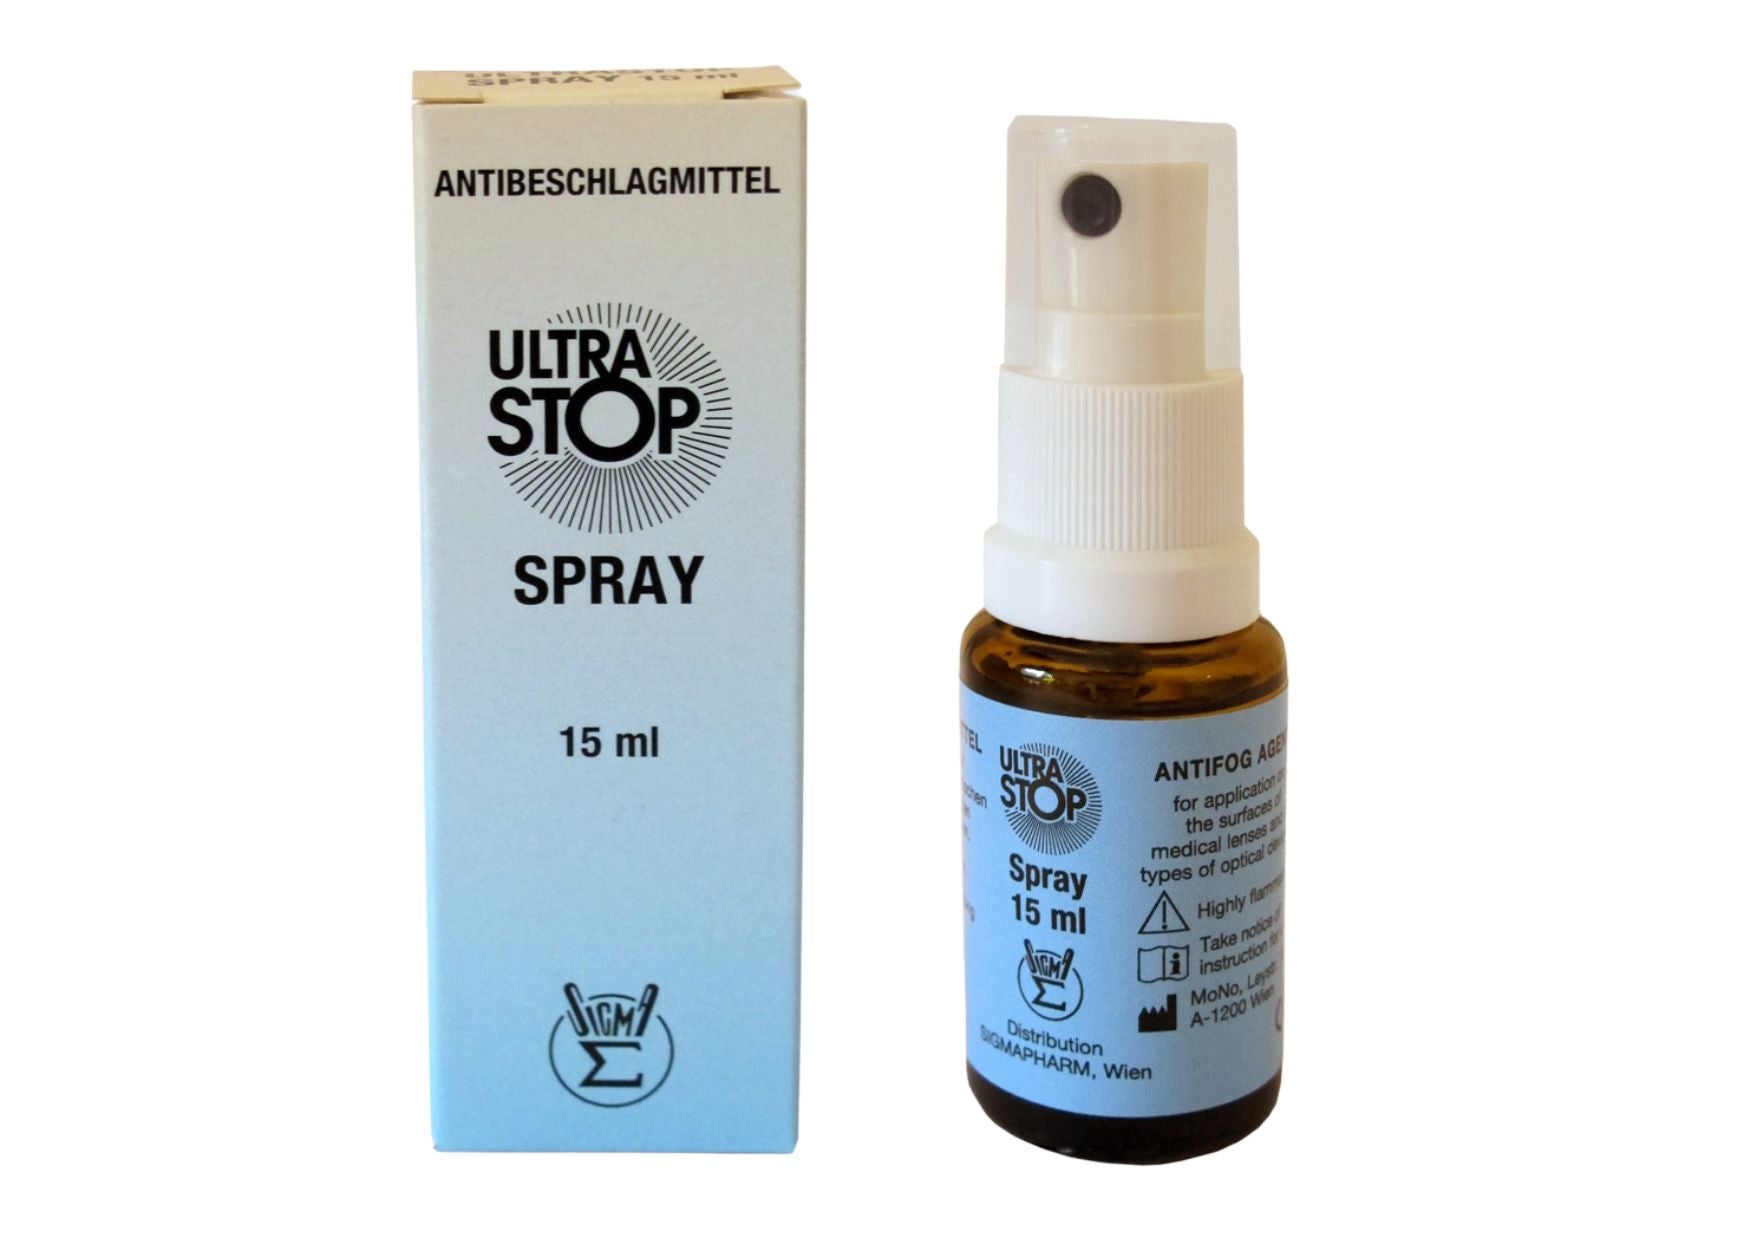 ULTRASTOP anti-fogging agent, non-sterile, 15 ml spray bottle